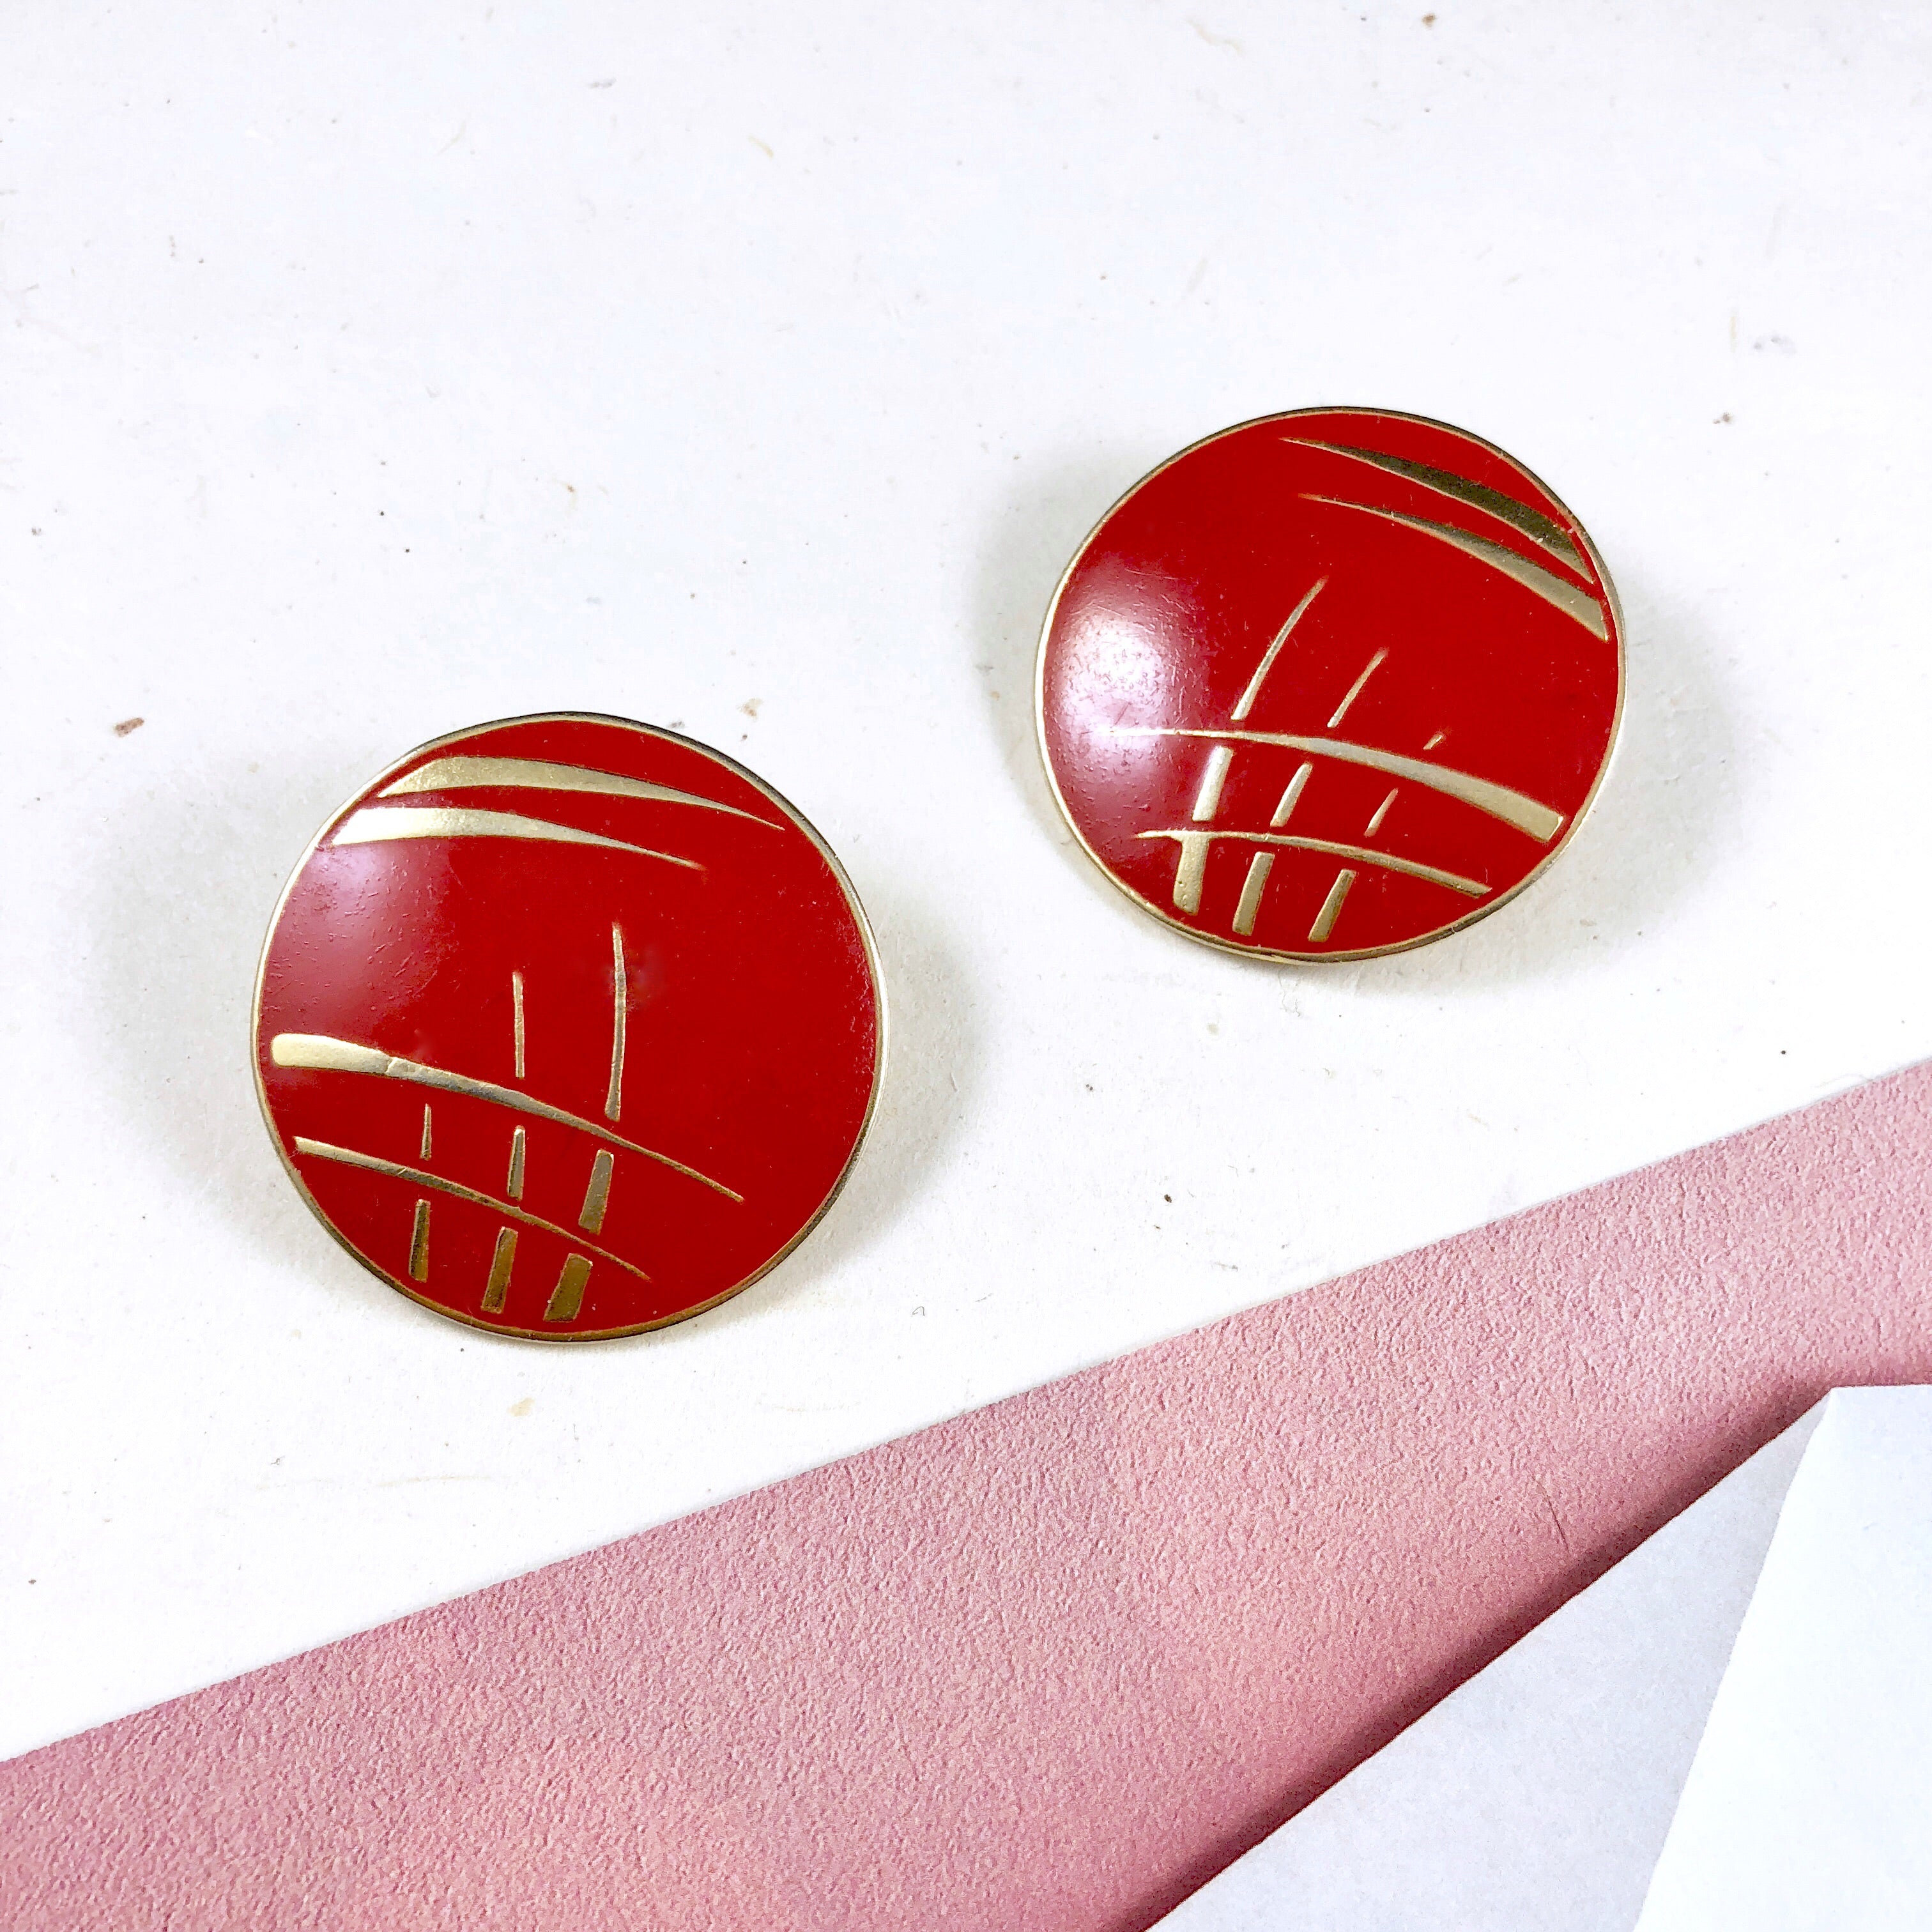 Vintage L.BOTT Red Enamel Gold Art button Earrings